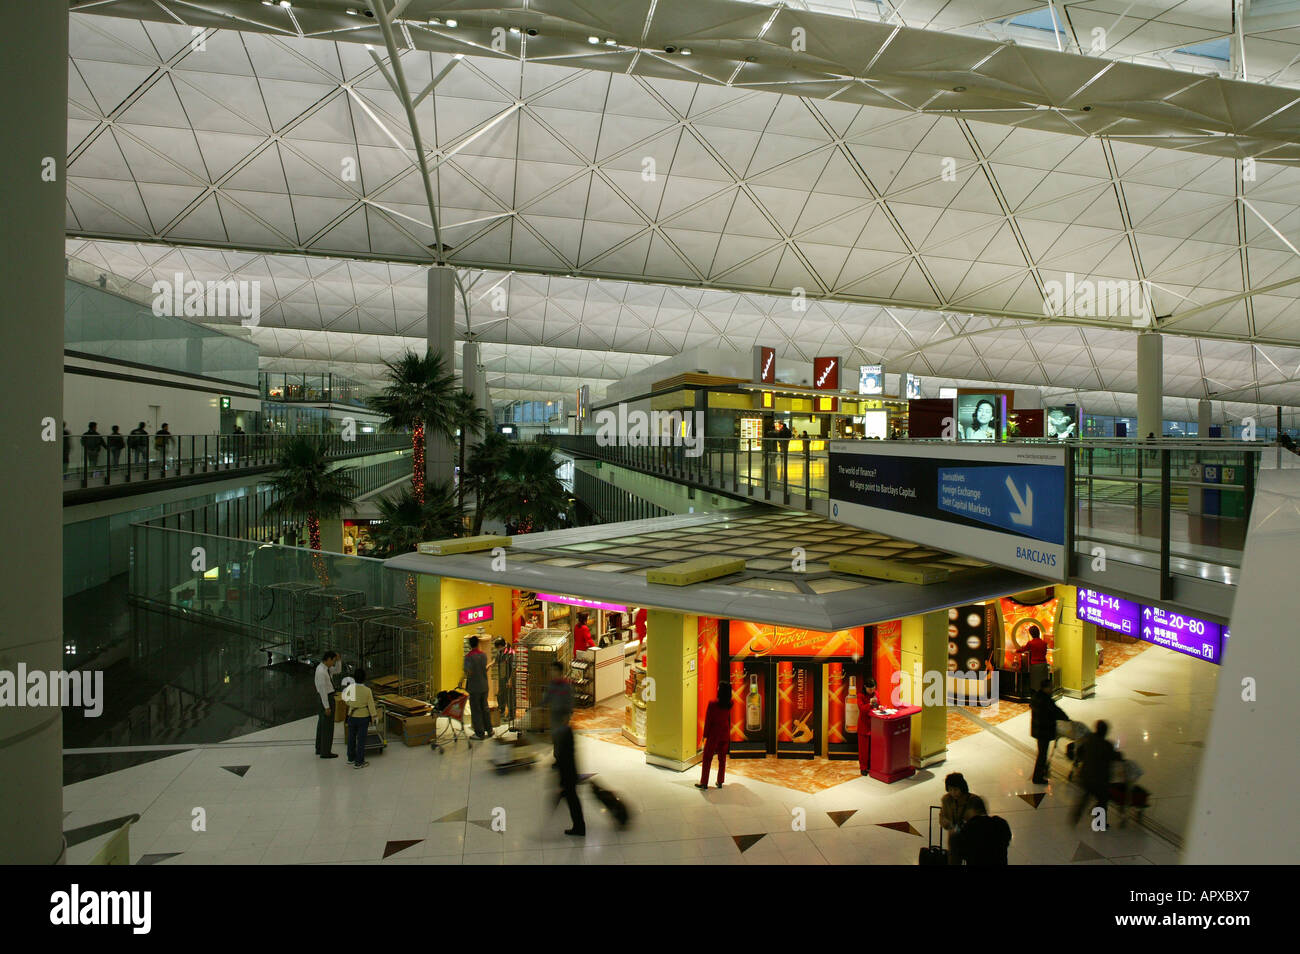 International Airport Hong Kong, Lantau Island, Hong Kong, China Stock Photo